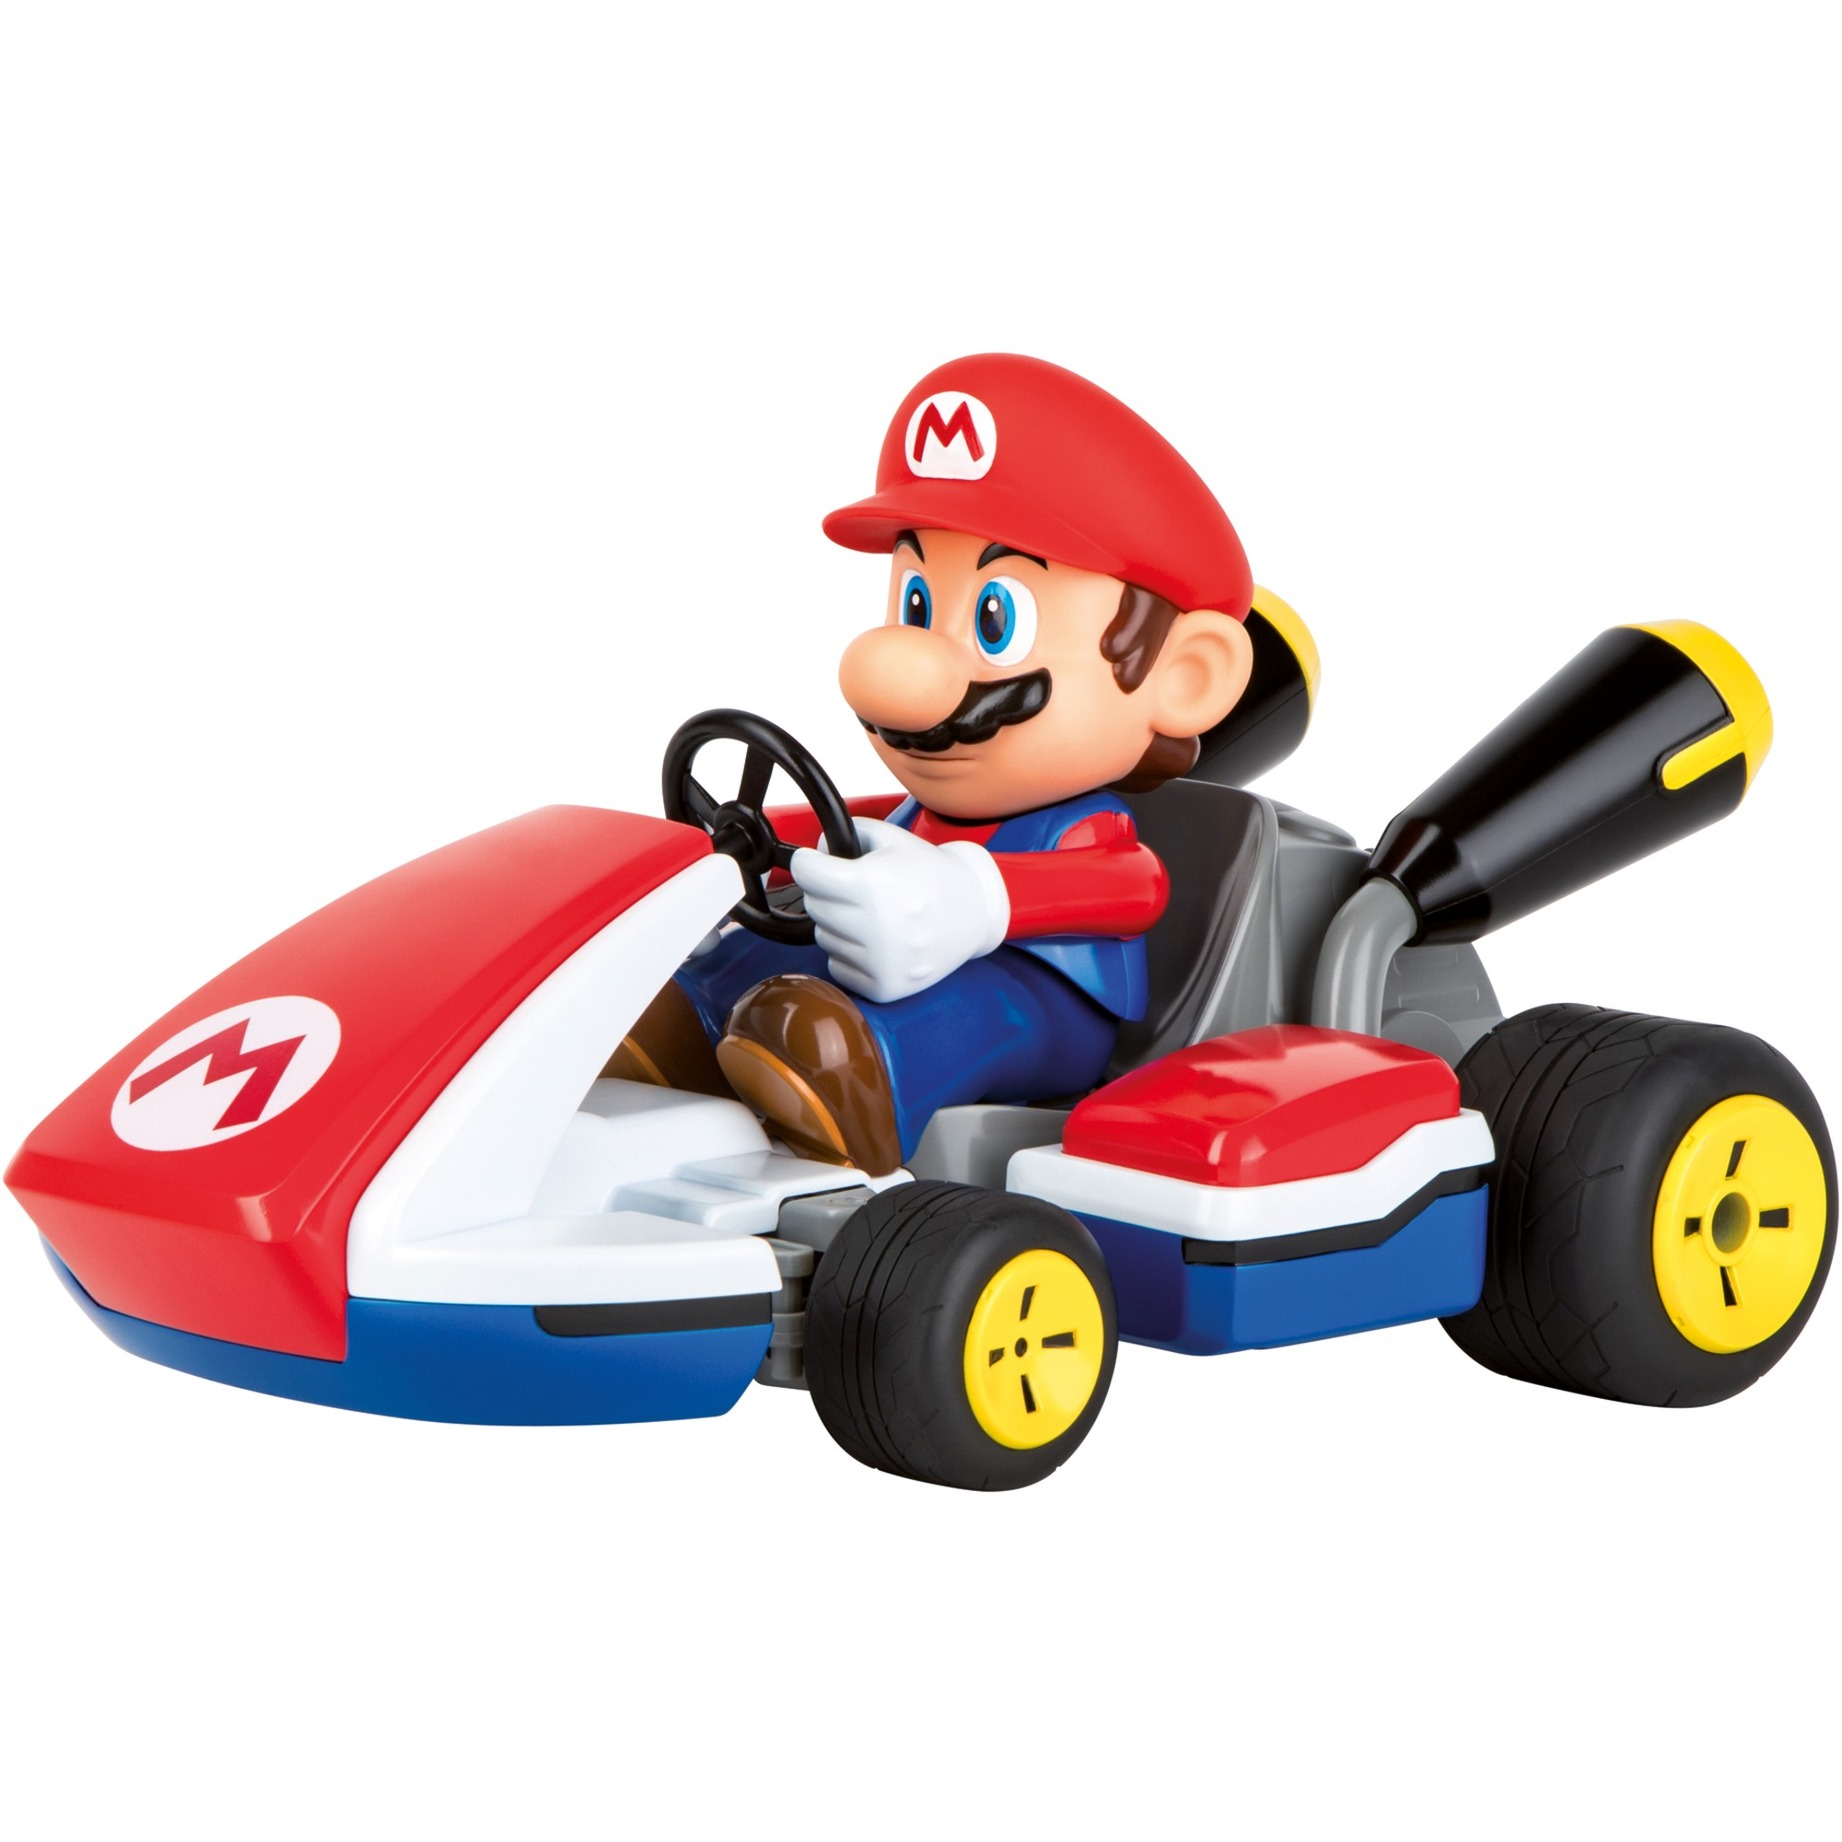 Image of Alternate - RC Mario Kart - Mario Race Kart mit Sound online einkaufen bei Alternate